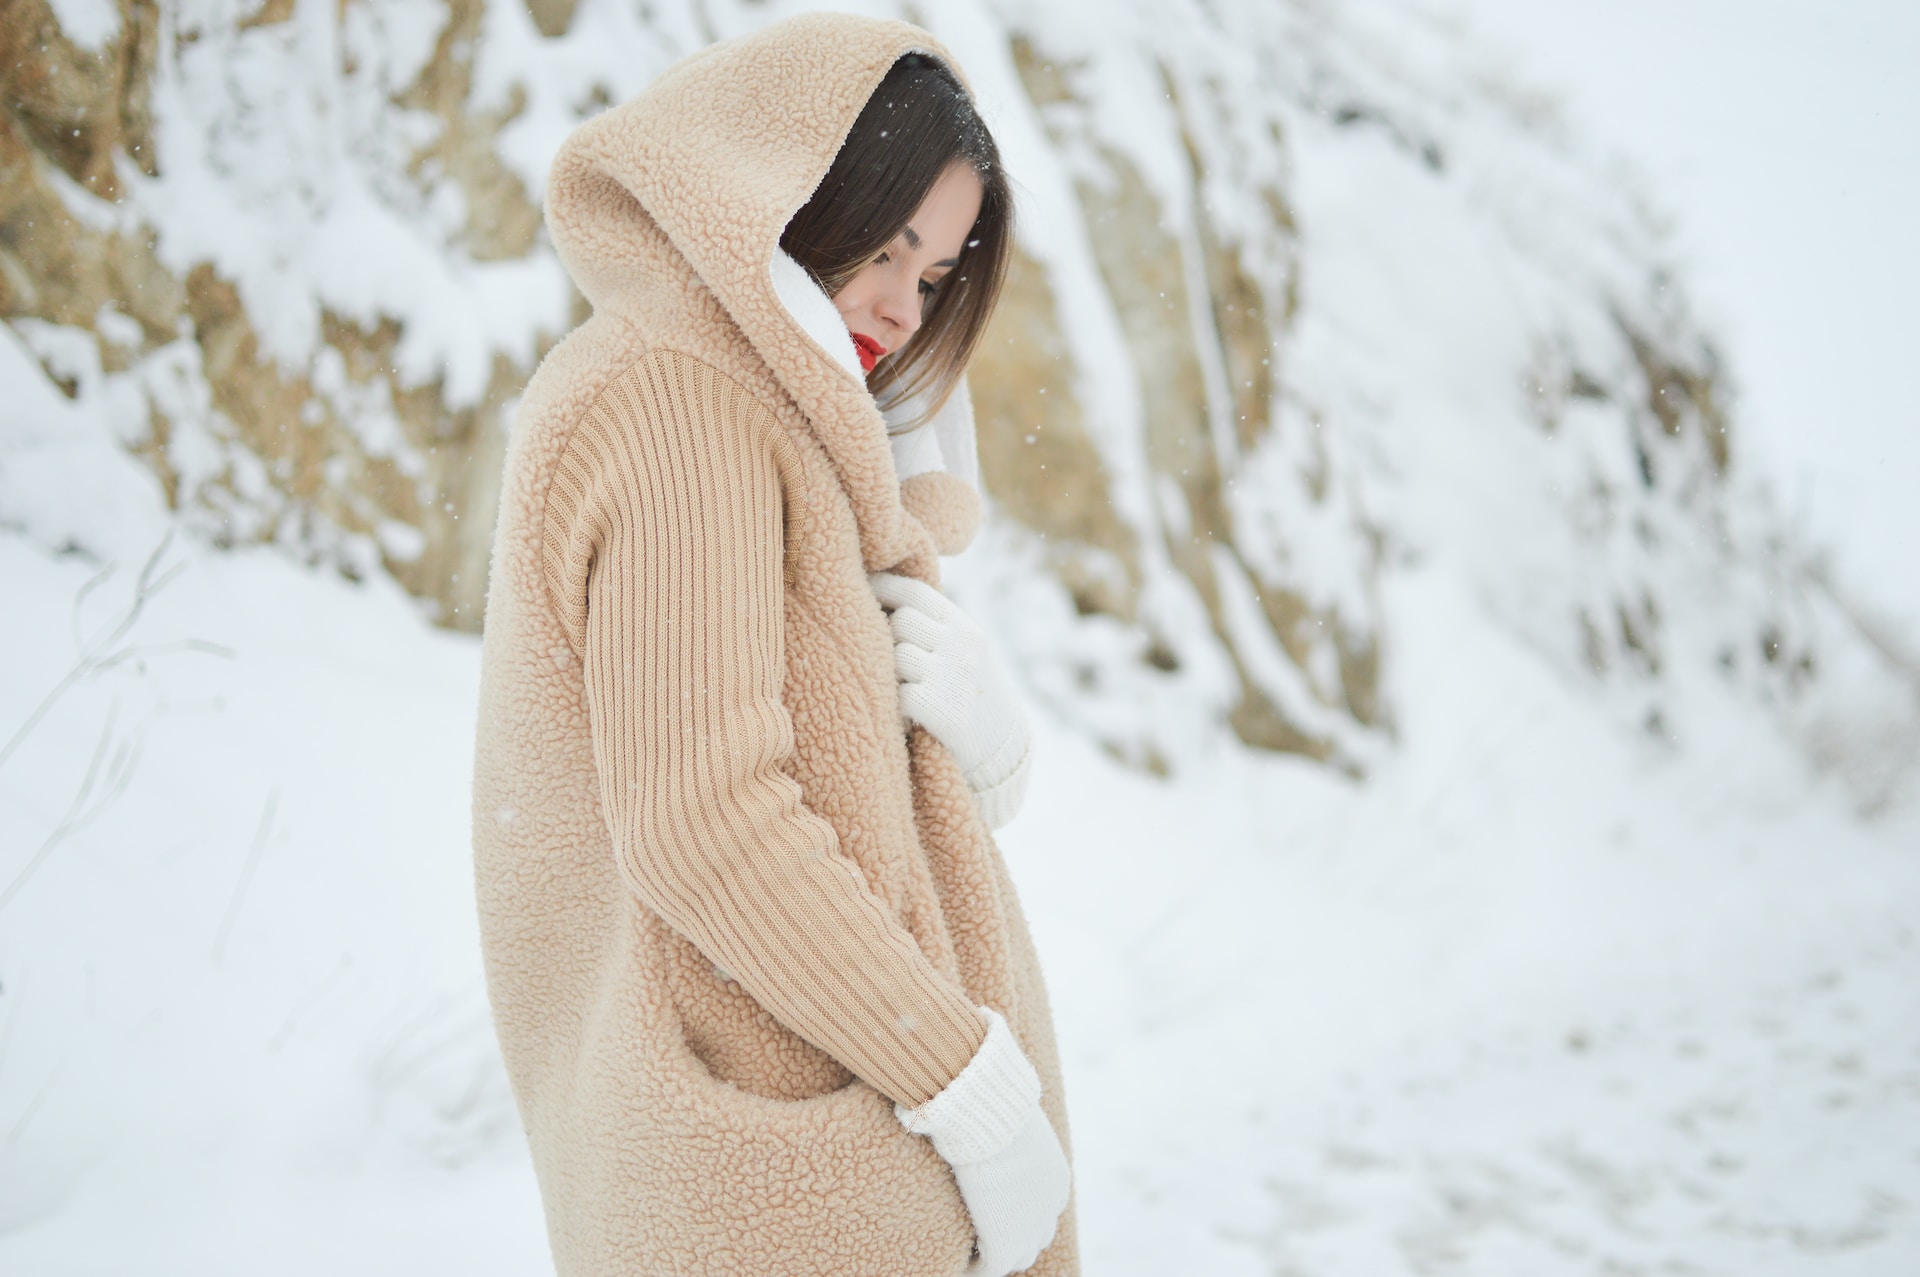  Tragen Sie geeignete Kleidung: Schützen Sie Ihre Haut vor kaltem Wind und niedrigen Temperaturen